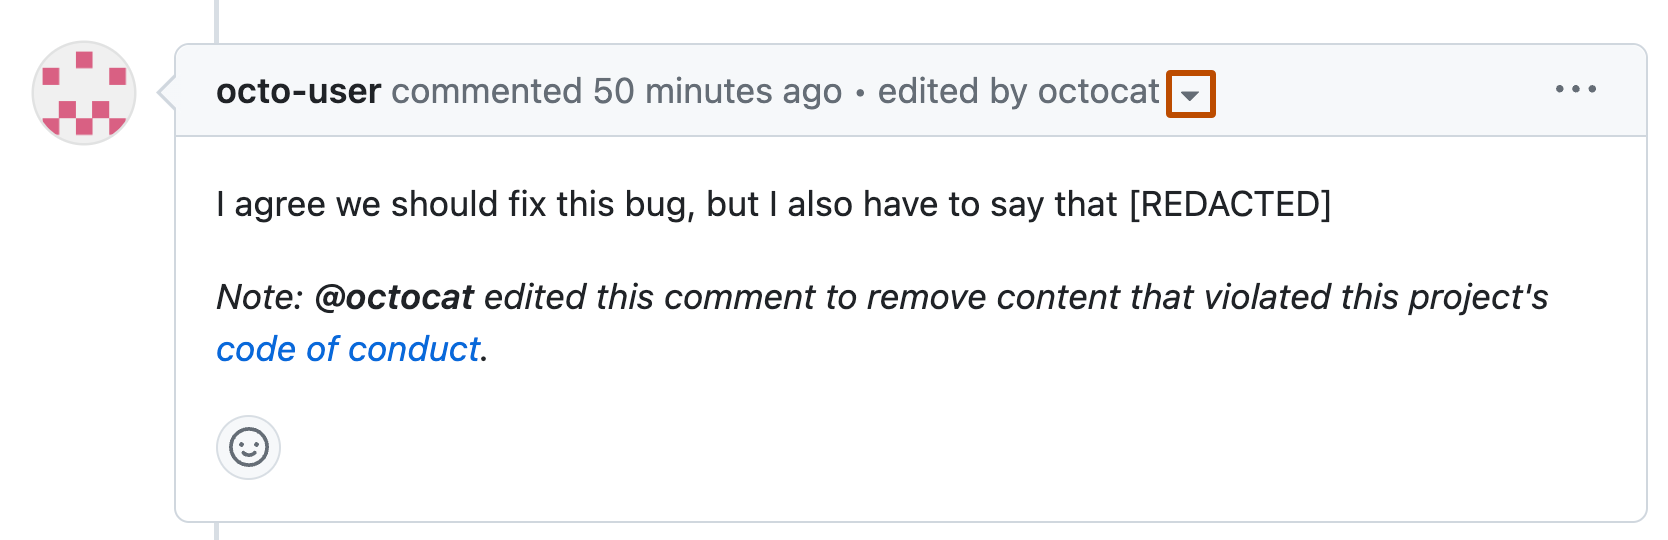 Captura de pantalla de un comentario por octo-user parcialmente editado. En el encabezado del comentario, junto al texto "editado por octocat", aparece un icono desplegable con un contorno naranja.